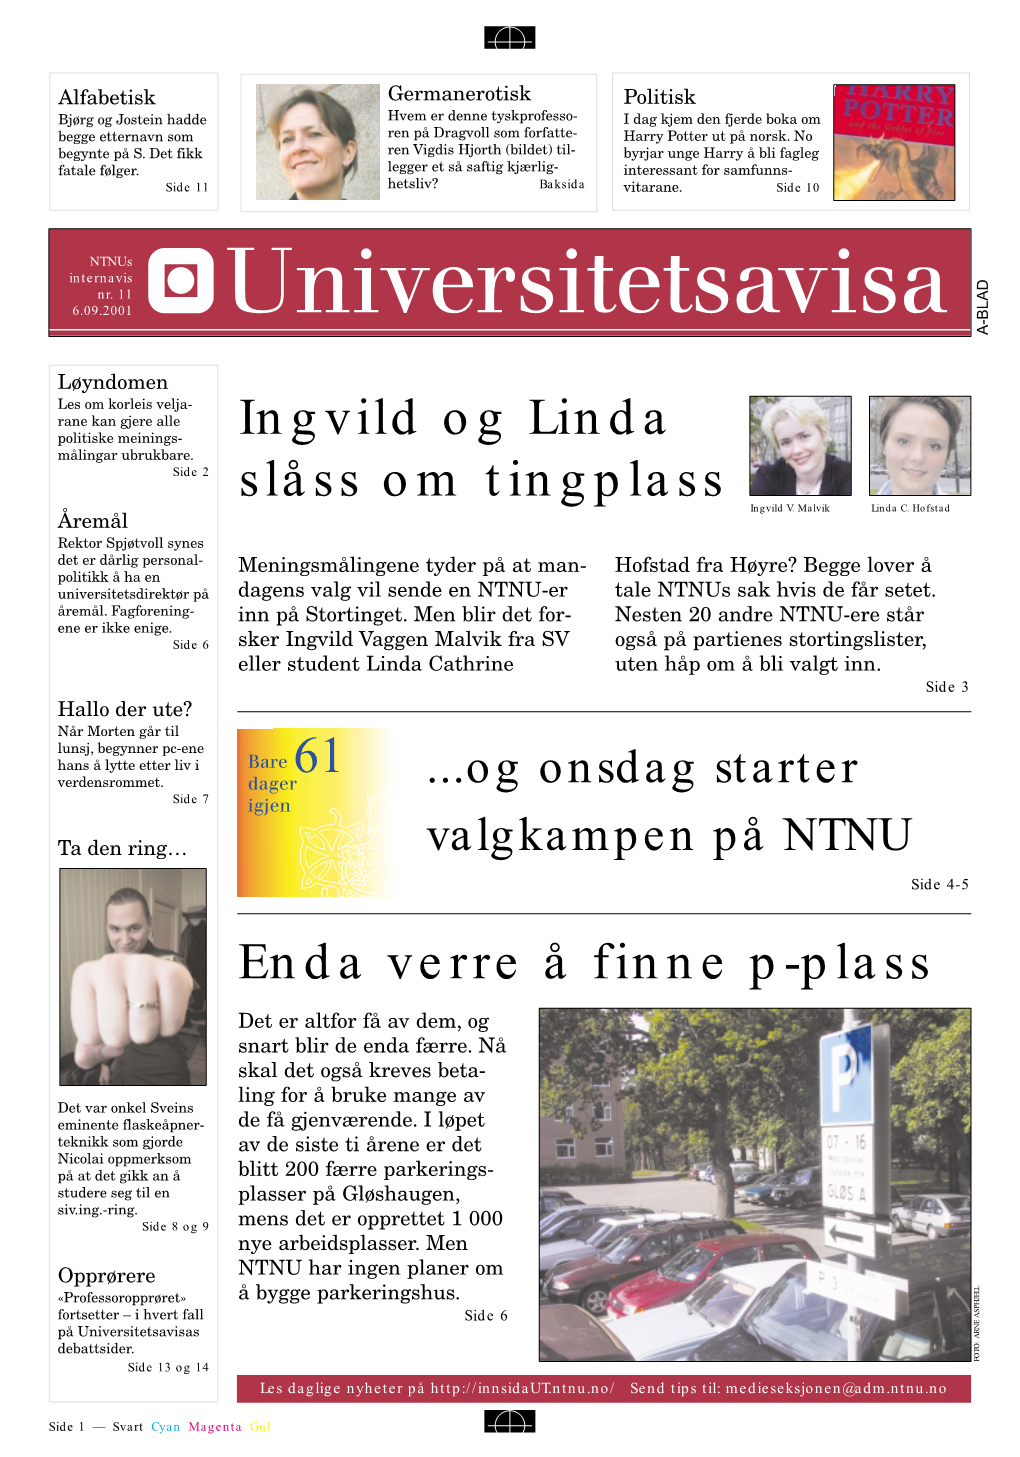 Ingvild Og Linda Slåss Om Tingplass 61 Enda Verre Å Finne P-Plass